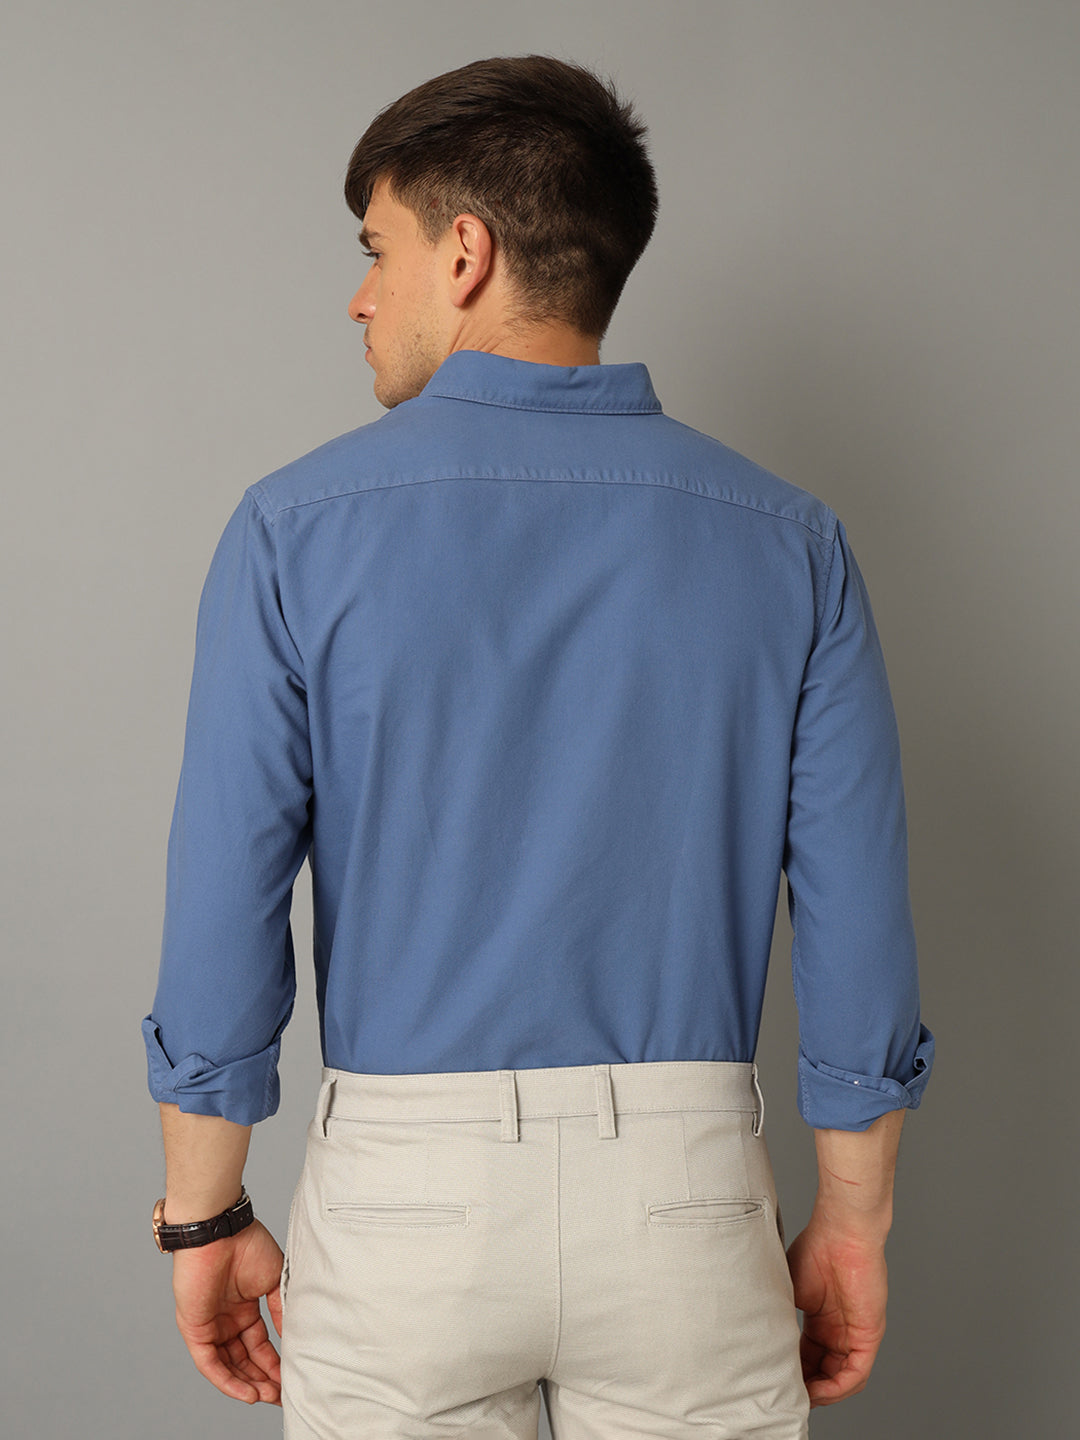 Aldeno Men Solid Formal Blue Shirt